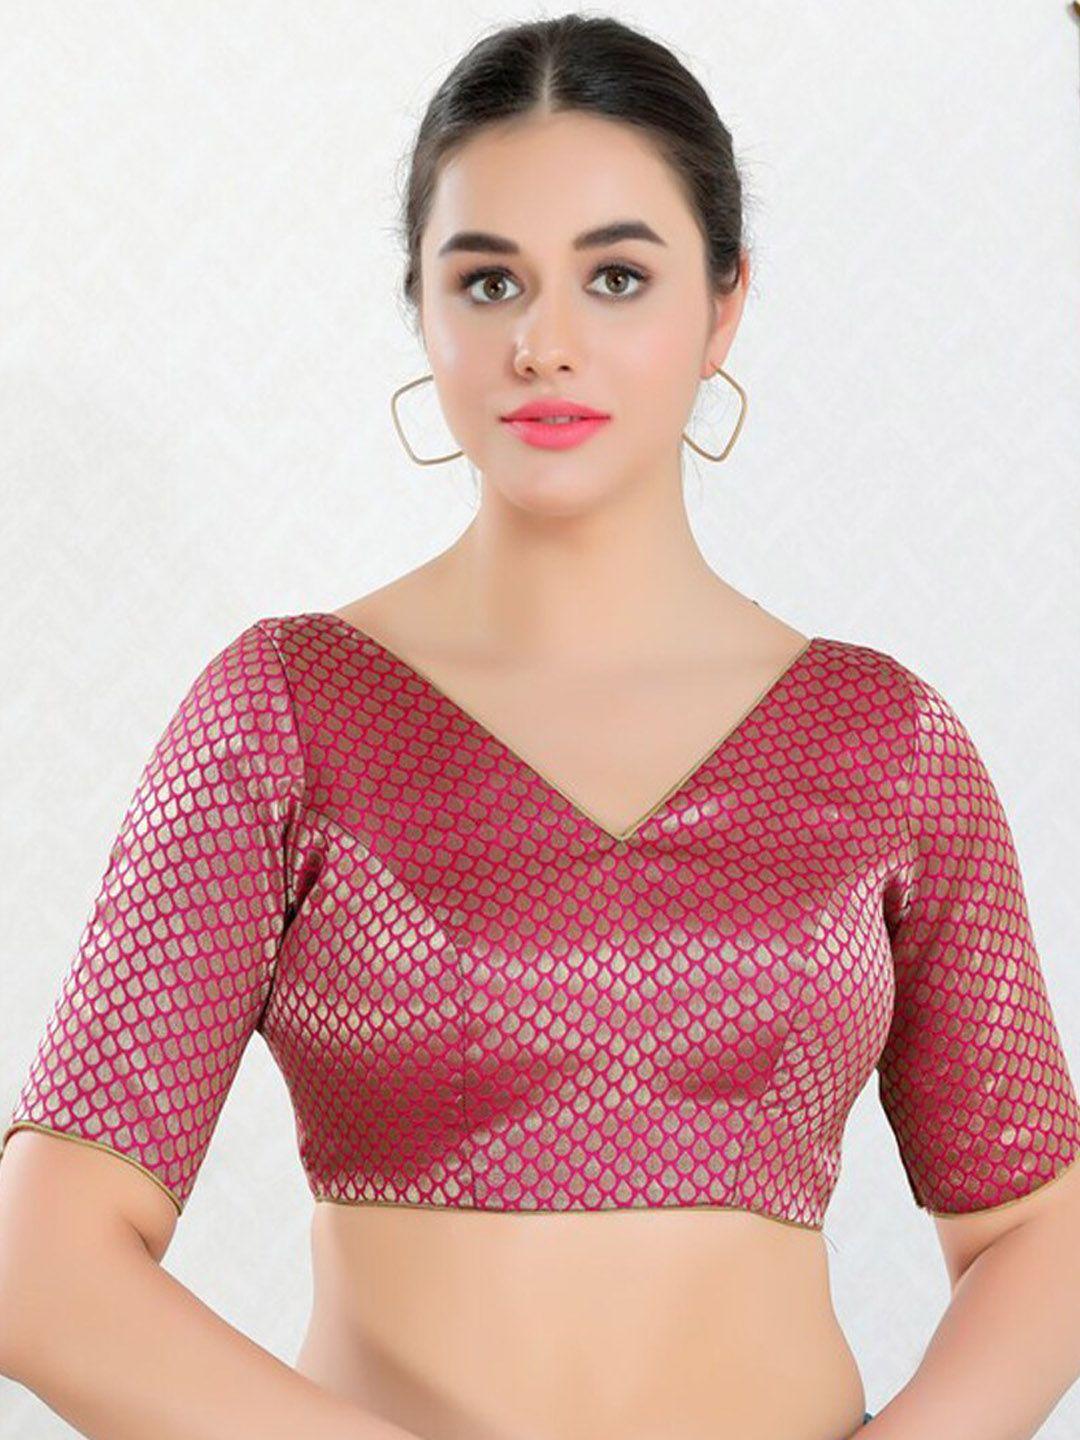 salwar studio woven design jacquard saree blouse